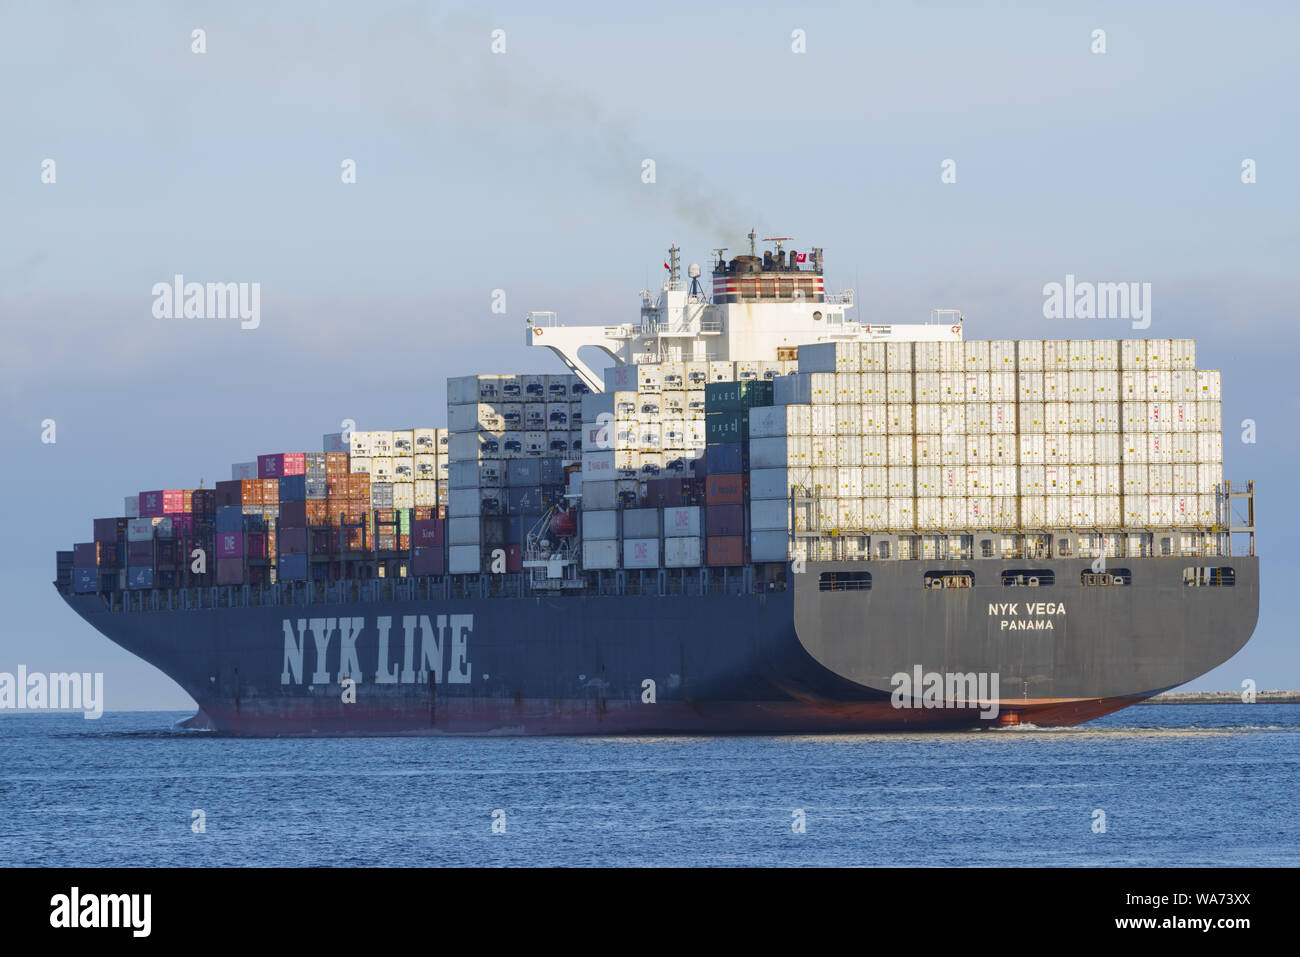 Bild eines NYK Line Container schiff gezeigt, der Hafen von Los Angeles. Stockfoto